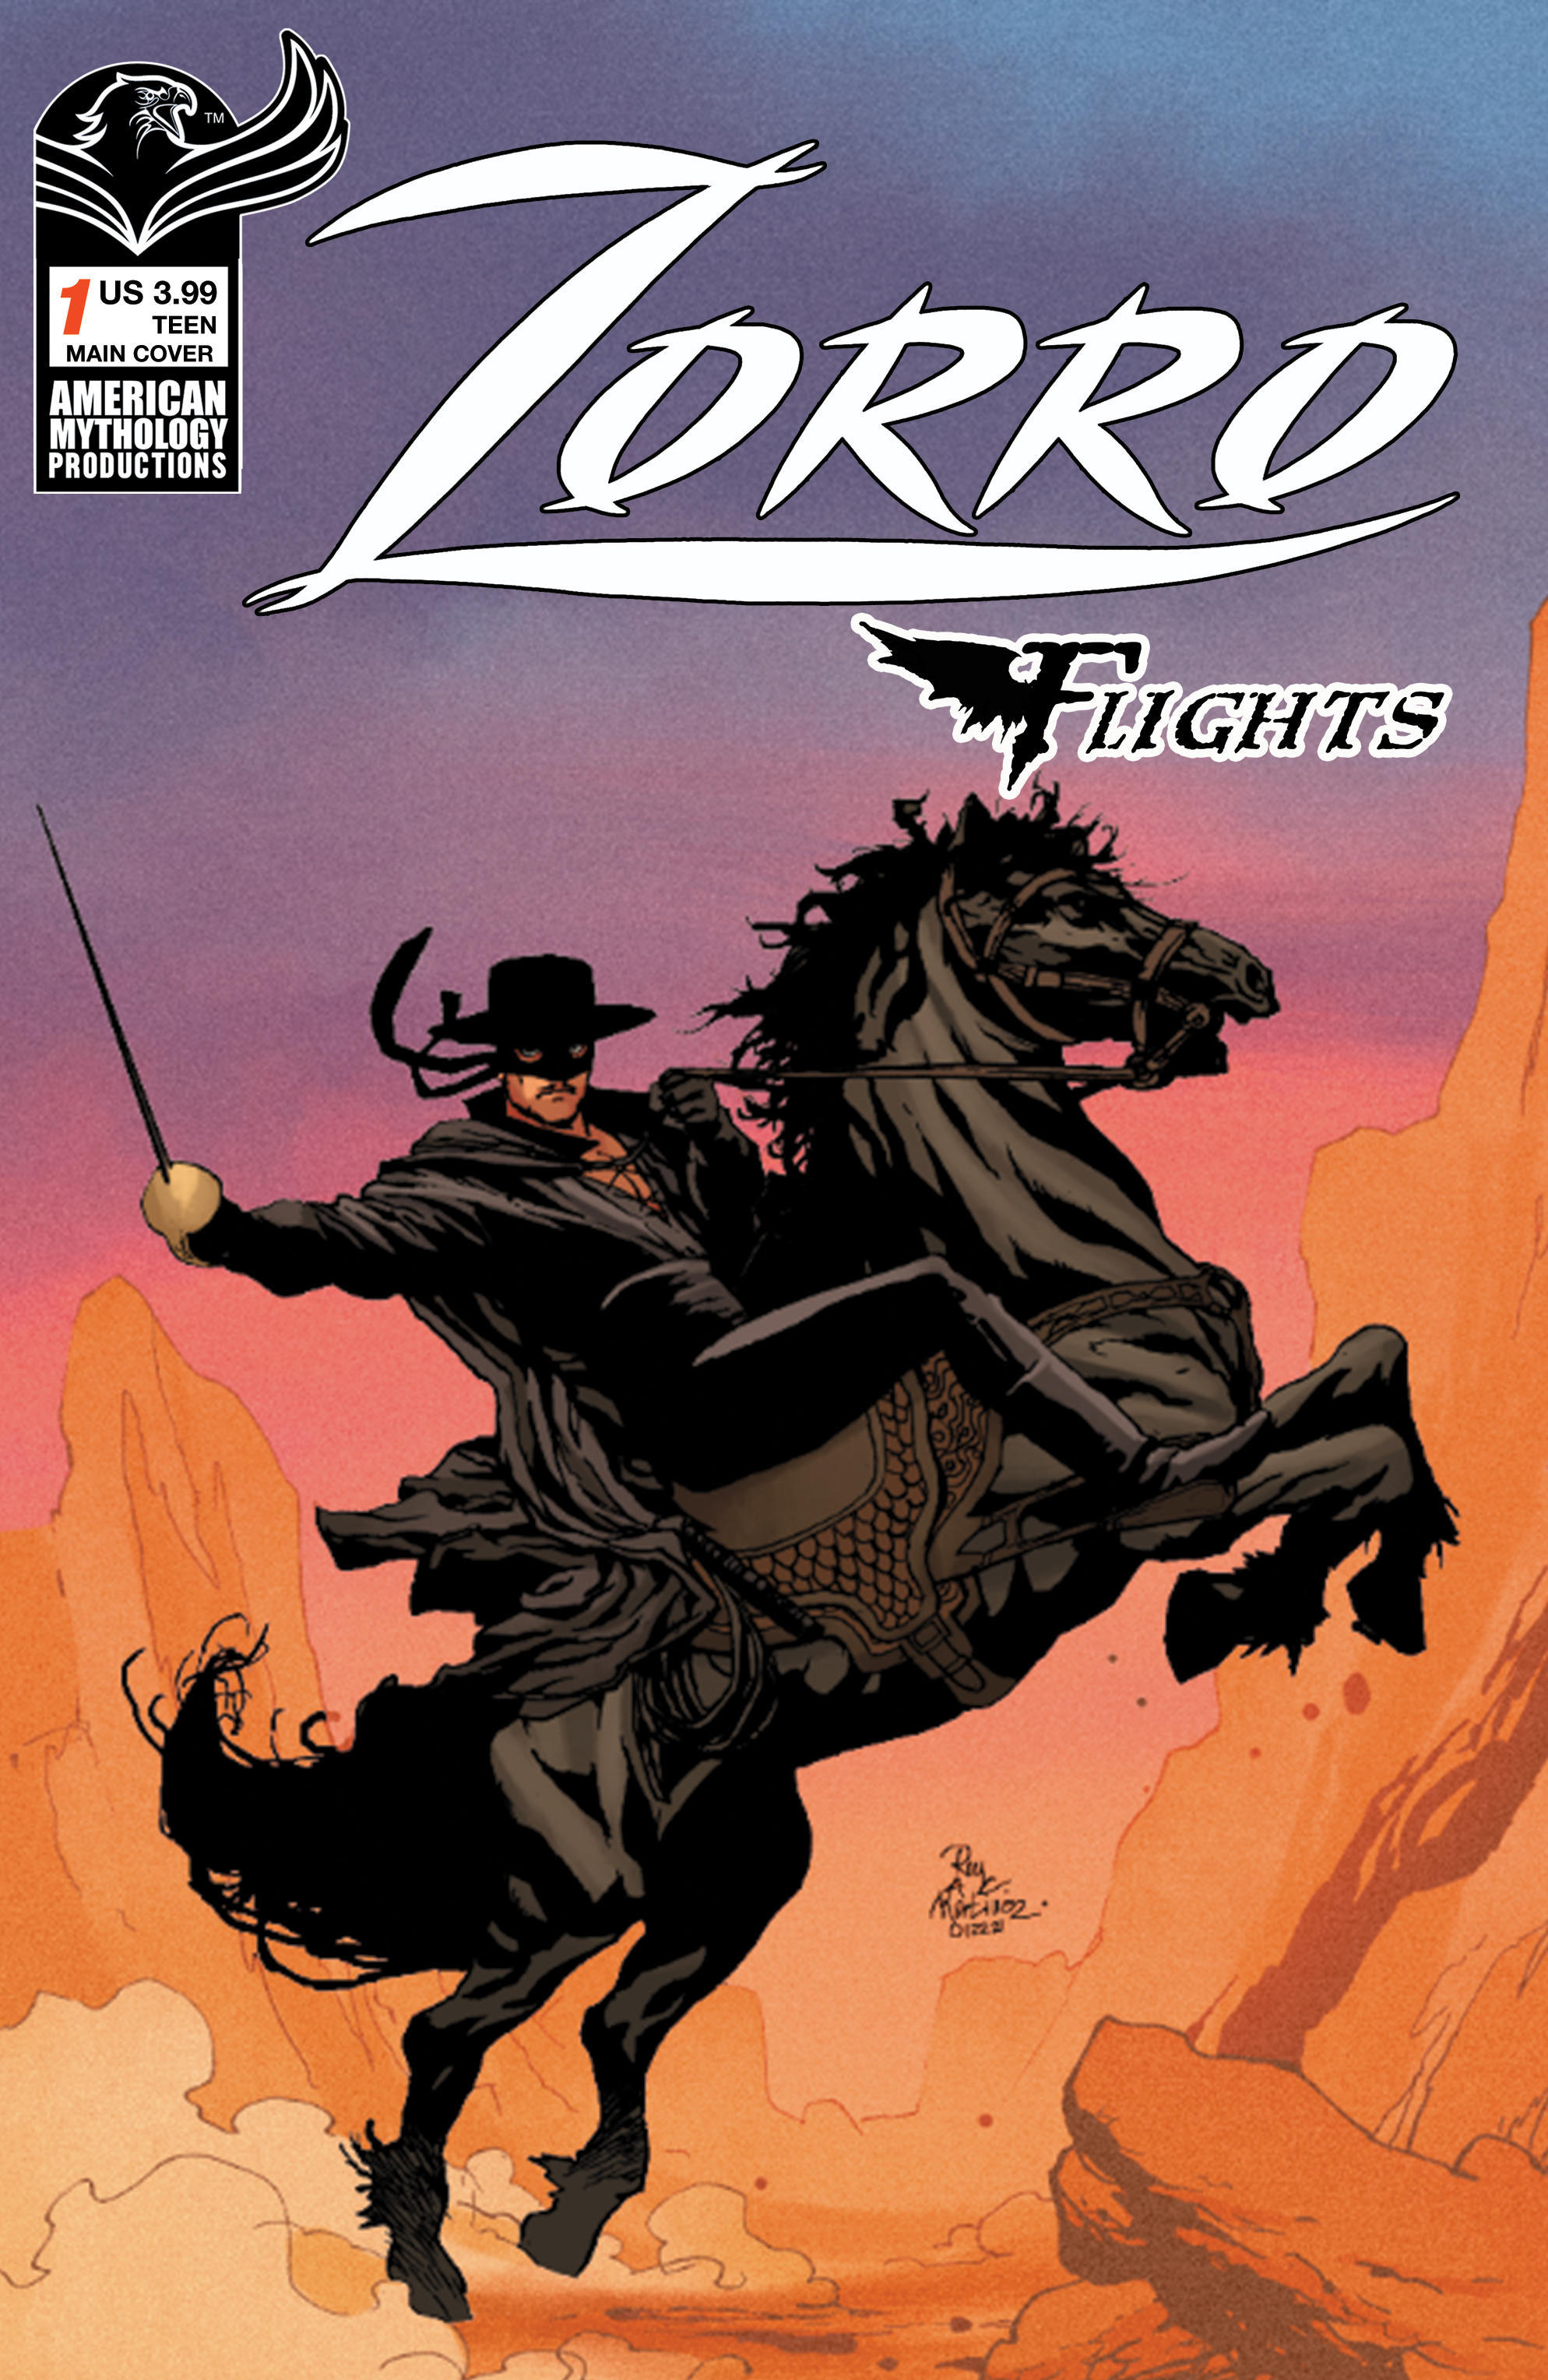 Zorro Flights #1 Cover A Martinez